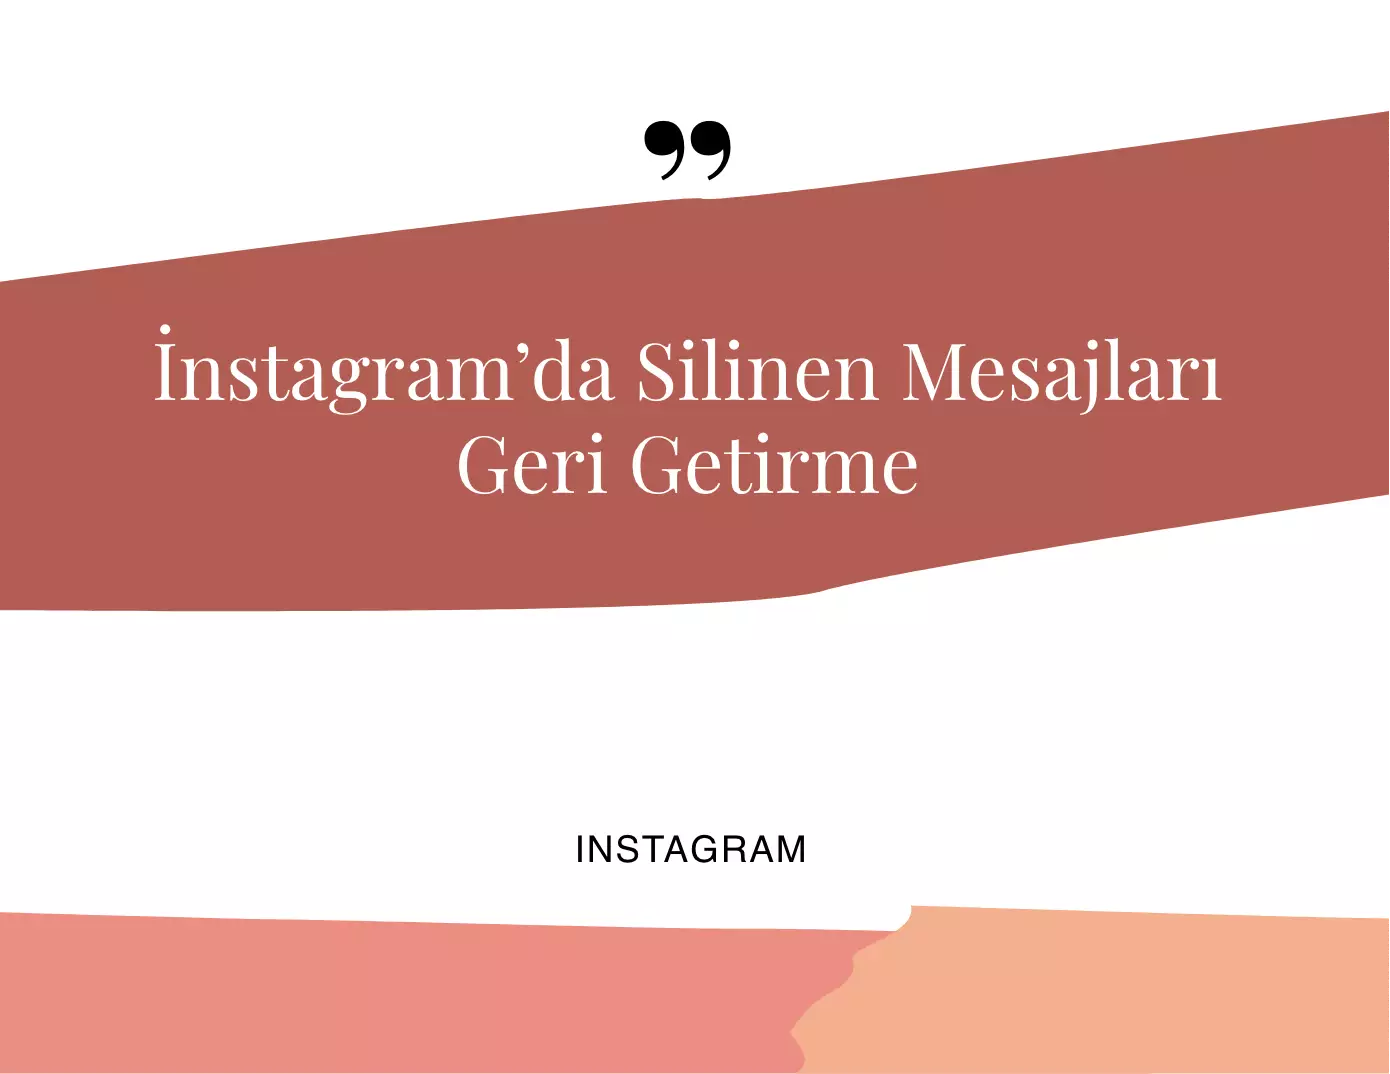 Instagram’da Silinen Mesajlar ve Yedekleme